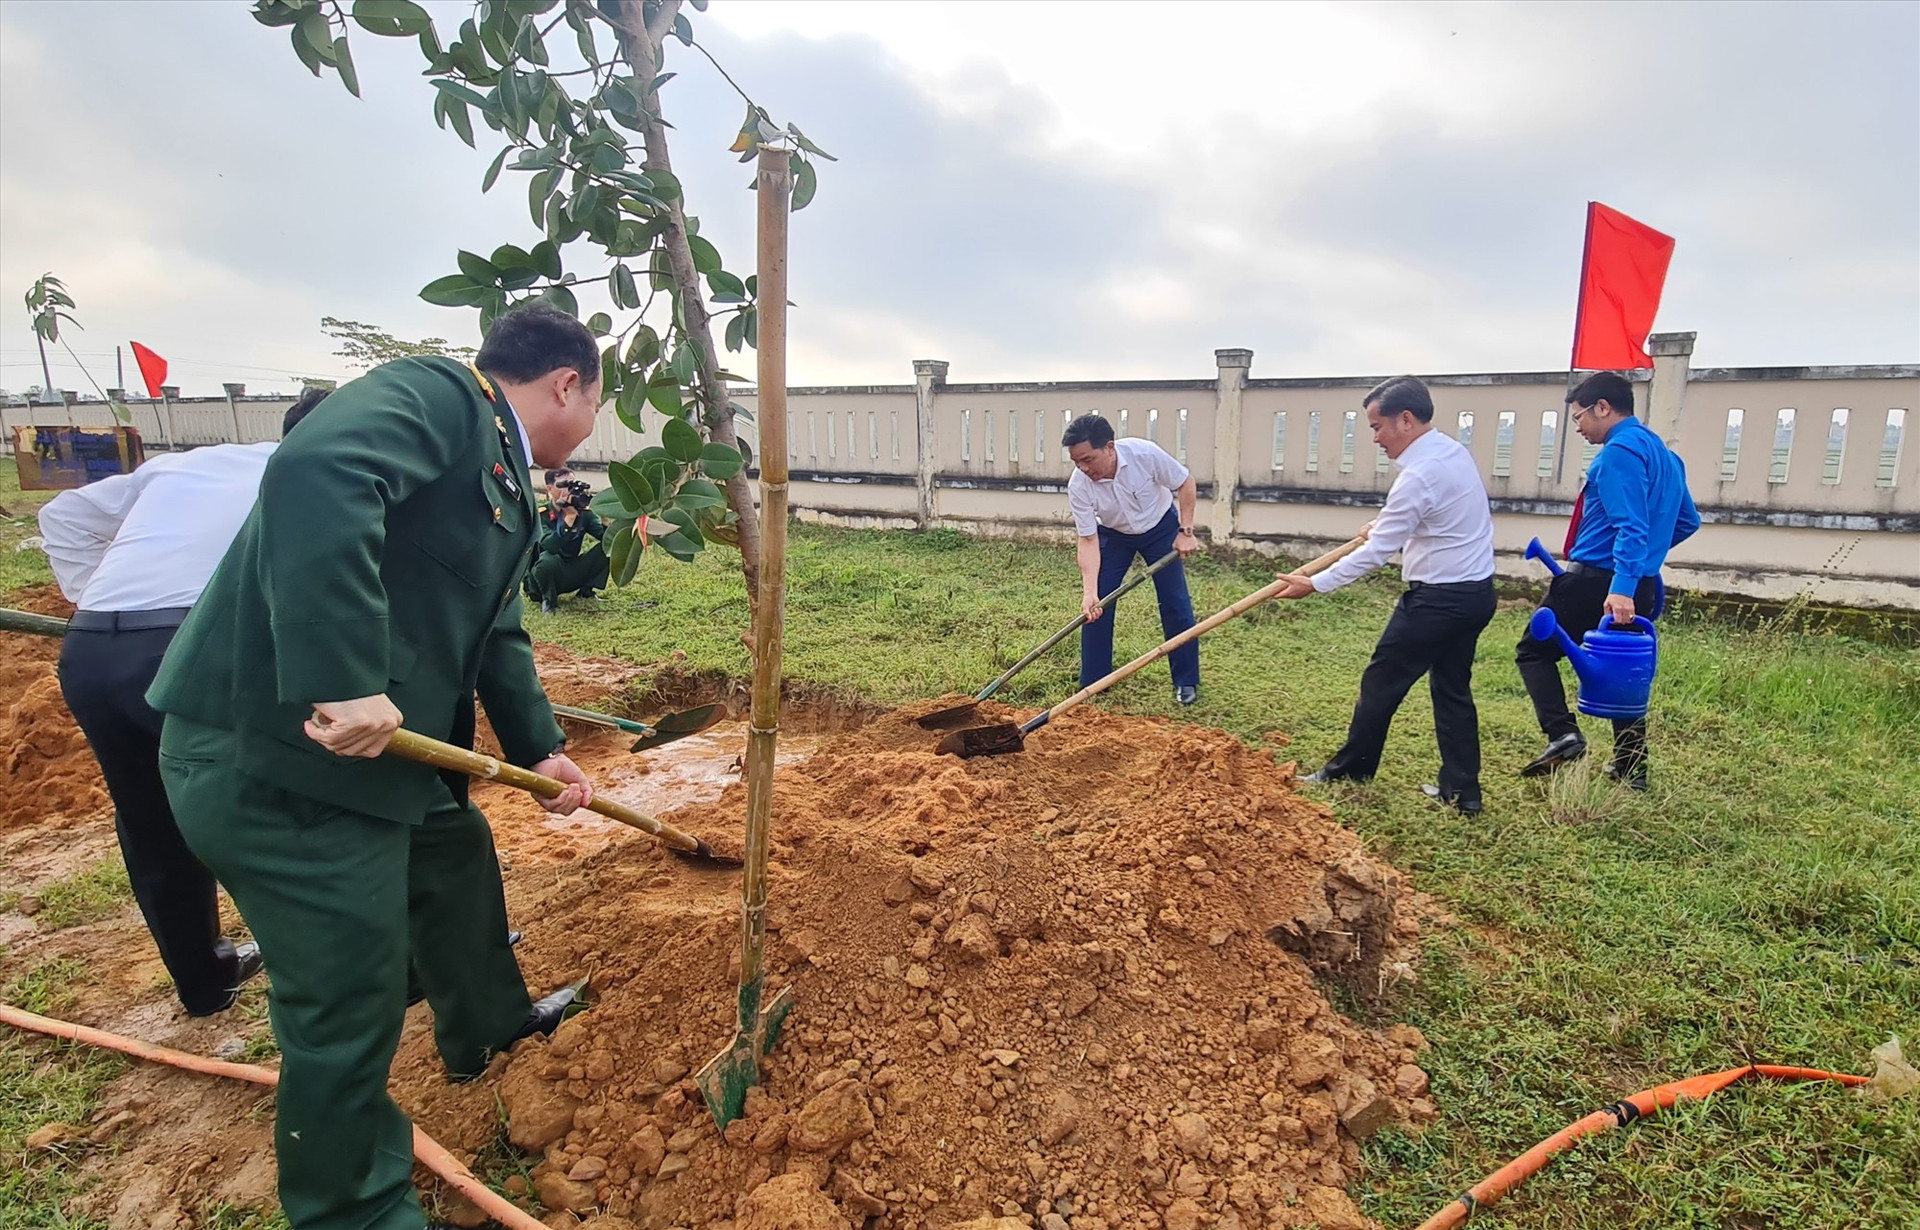 Phó Bí thư Thường trực Tỉnh ủy Lê Văn Dũng tham gia trồng cây xanh tại Đình làng Phiếm Ái. Ảnh: HOÀNG LIÊN